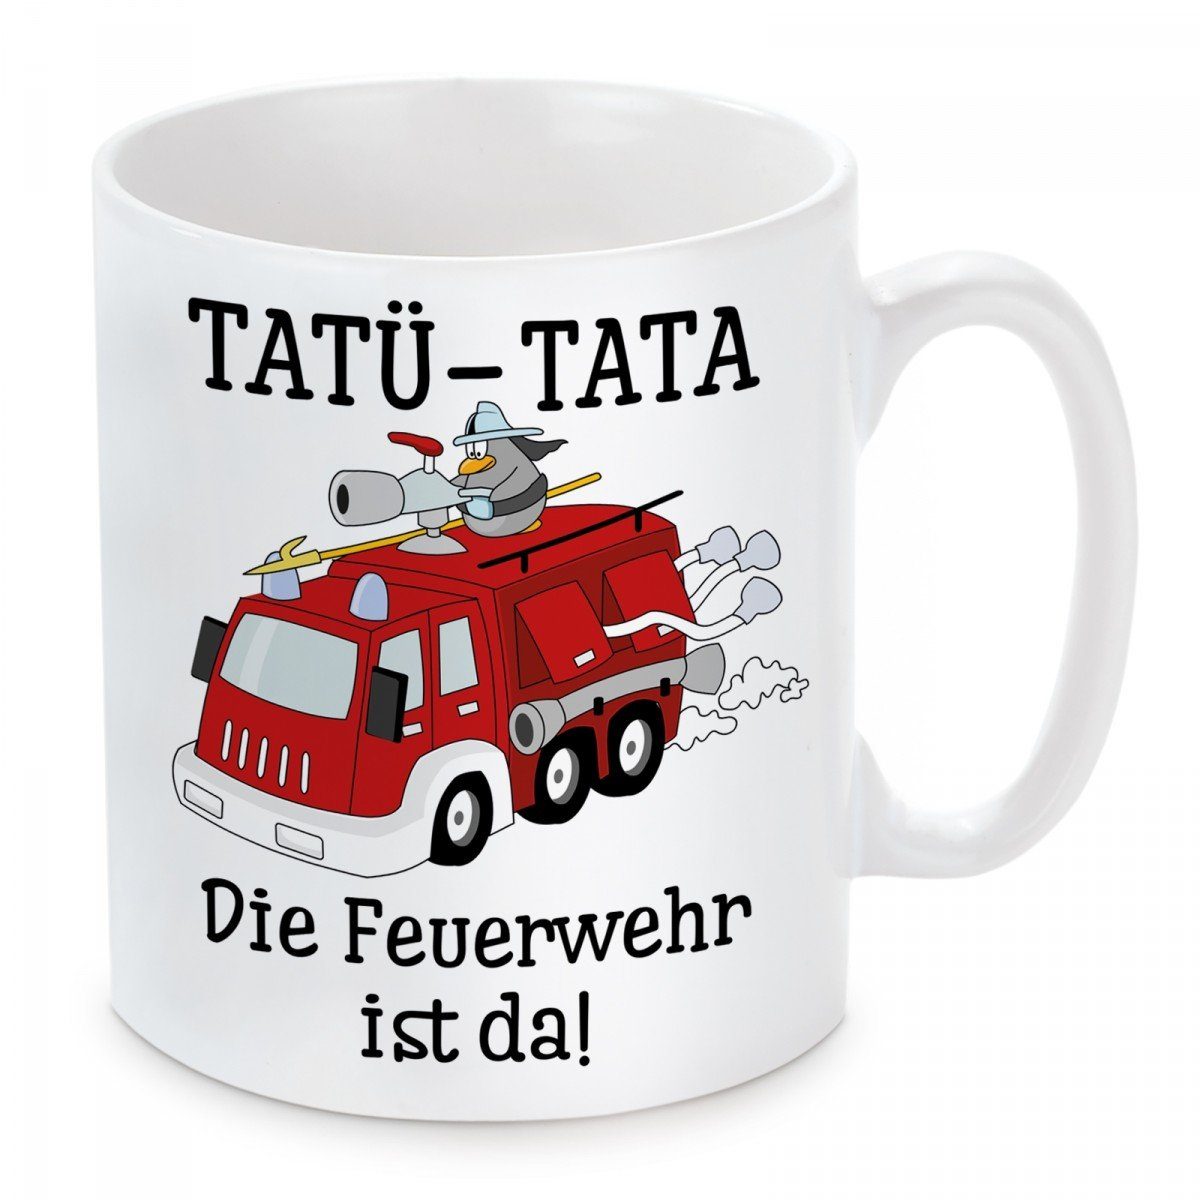 Kaffeebecher Motiv spülmaschinenfest und mit Herzbotschaft TATÜ-TATA-Die mikrowellengeeignet Kaffeetasse Tasse Keramik, da, ist Feuerwehr